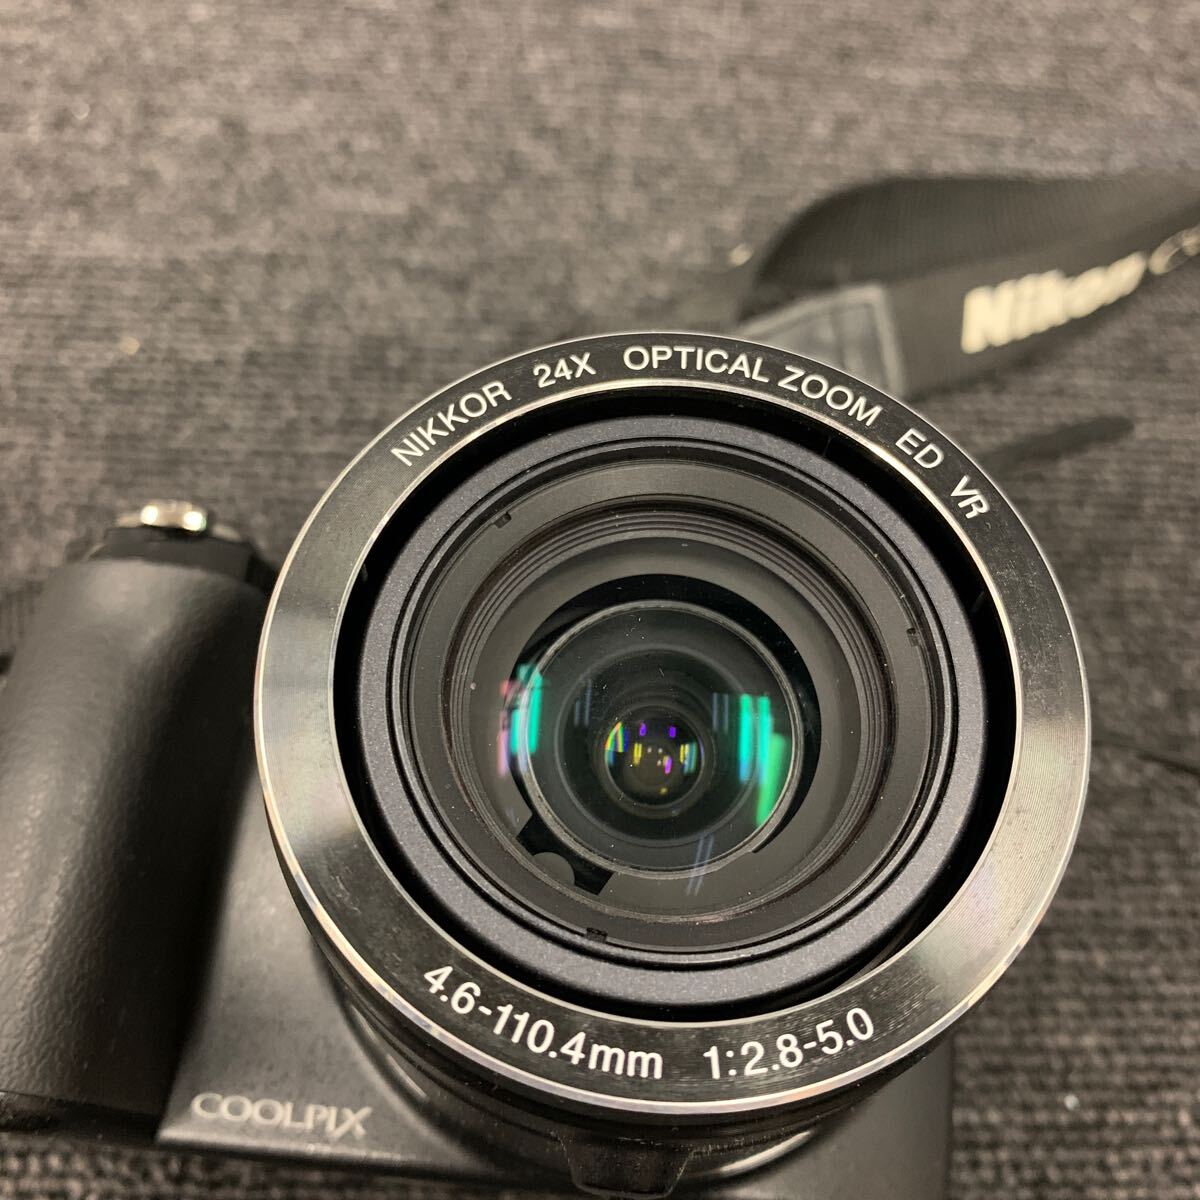 ■【売り切り】Nikon ニコン コンパクトデジタルカメラ COOLPIX P90 ブラック 4.6-110.4mm 1:2.8-5.0_画像8